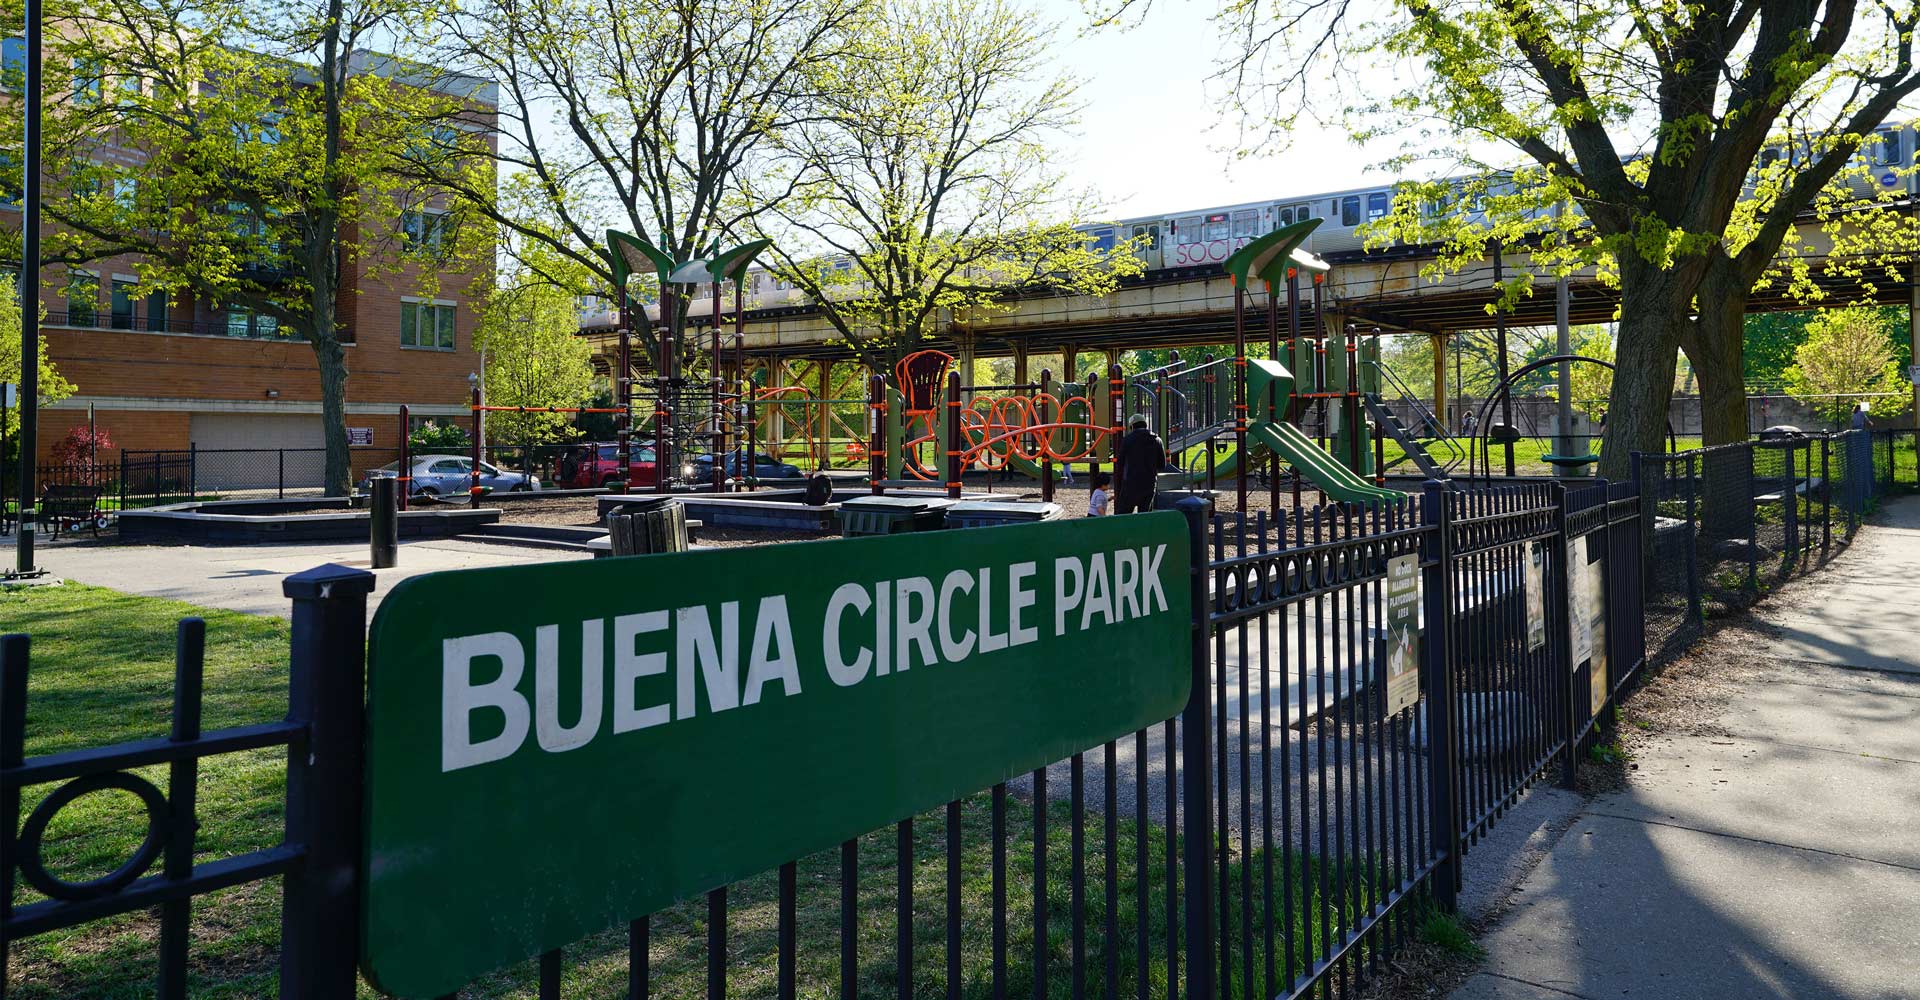 Buena Circle Park